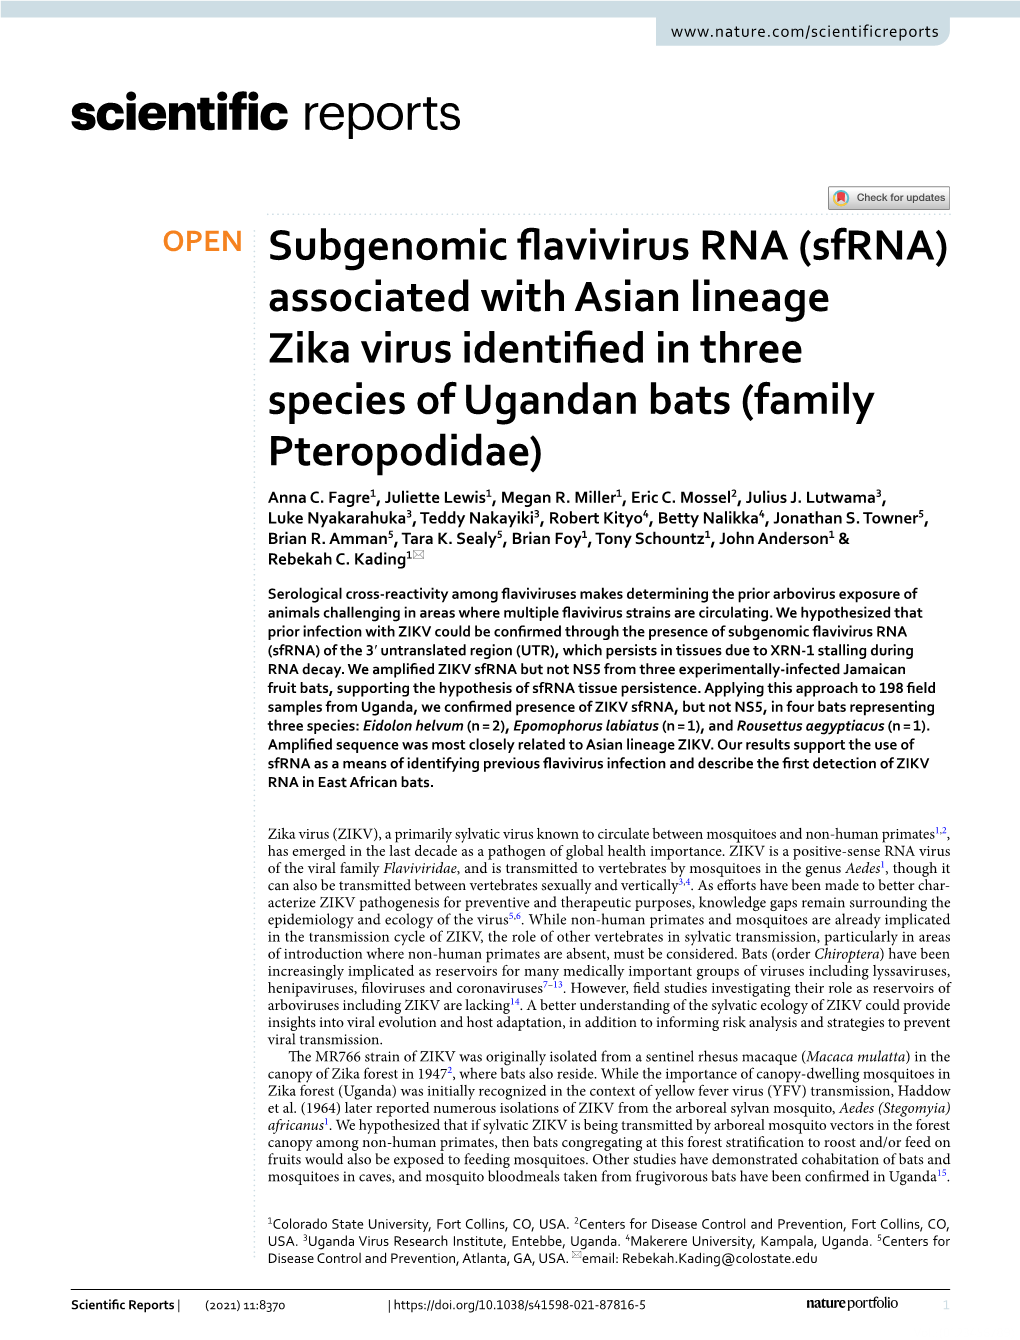 Subgenomic Flavivirus